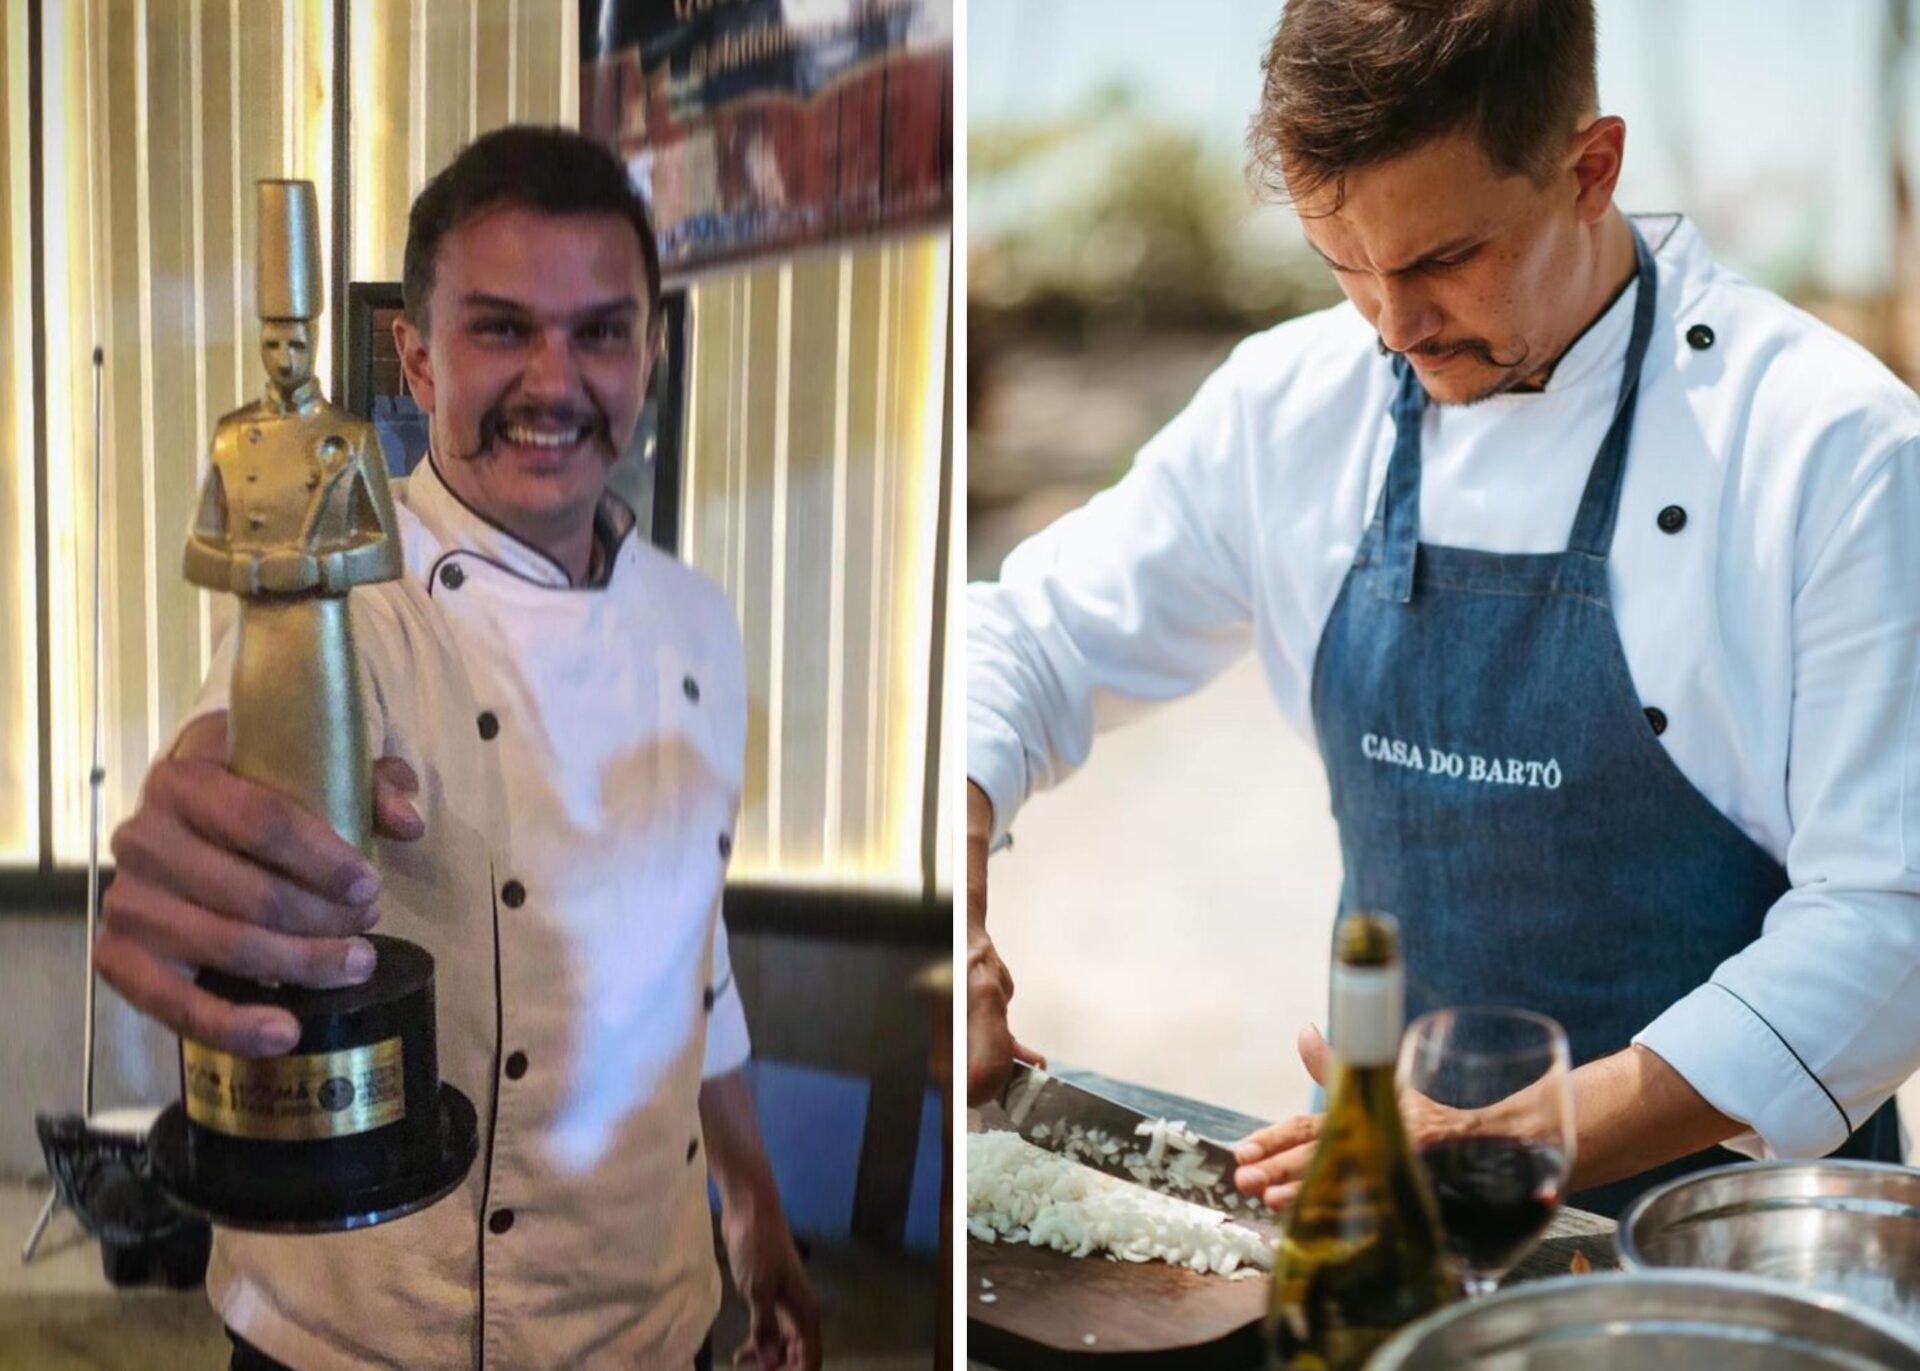 João Bruno, Chef Premiado de Ouro Preto-MG, fala sobre sua carreira na gastronomia ao Mais Minas